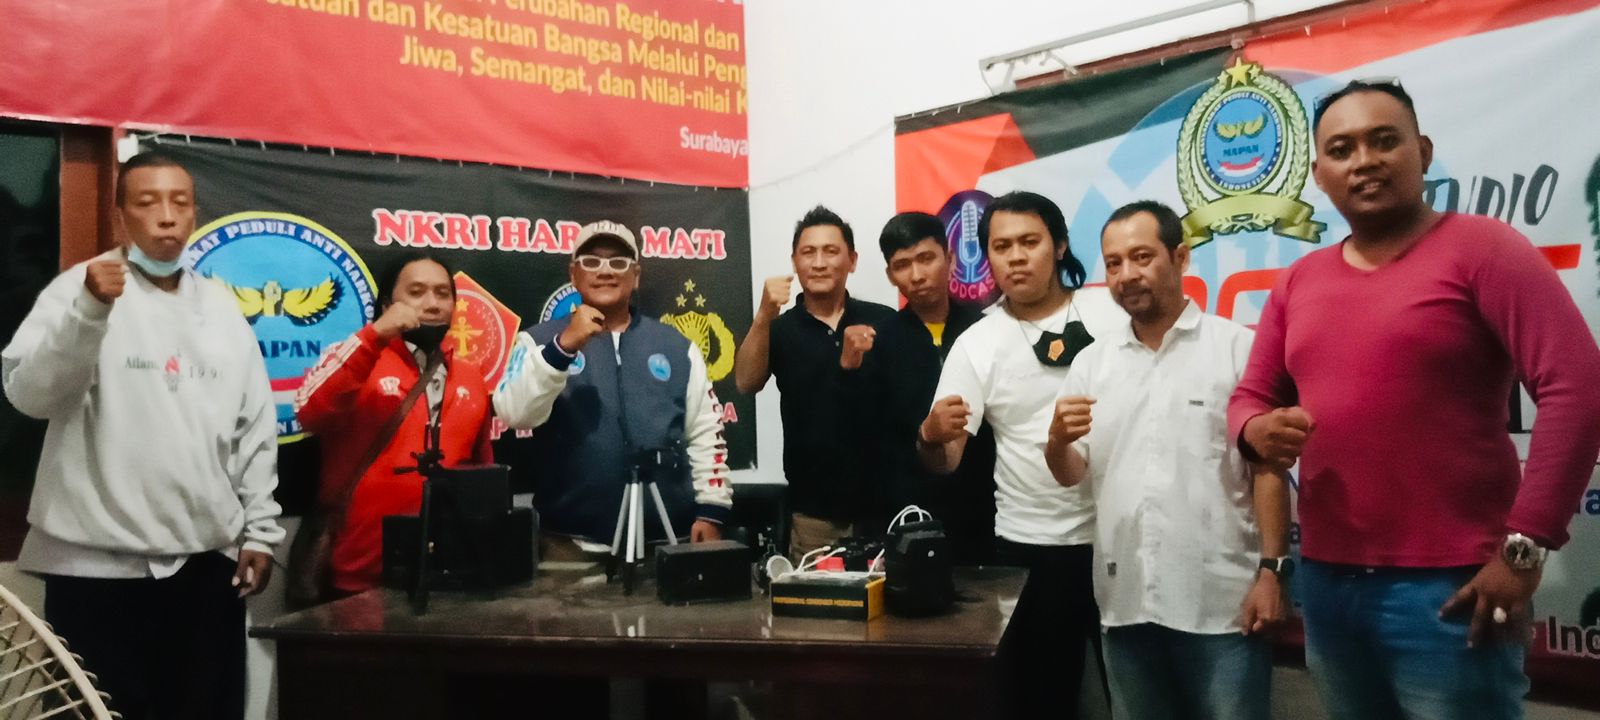 Dalam Rangka Konsolidasi, Ketum MAPAN Indonesia Kunjungi PIMDA Jawa Timur